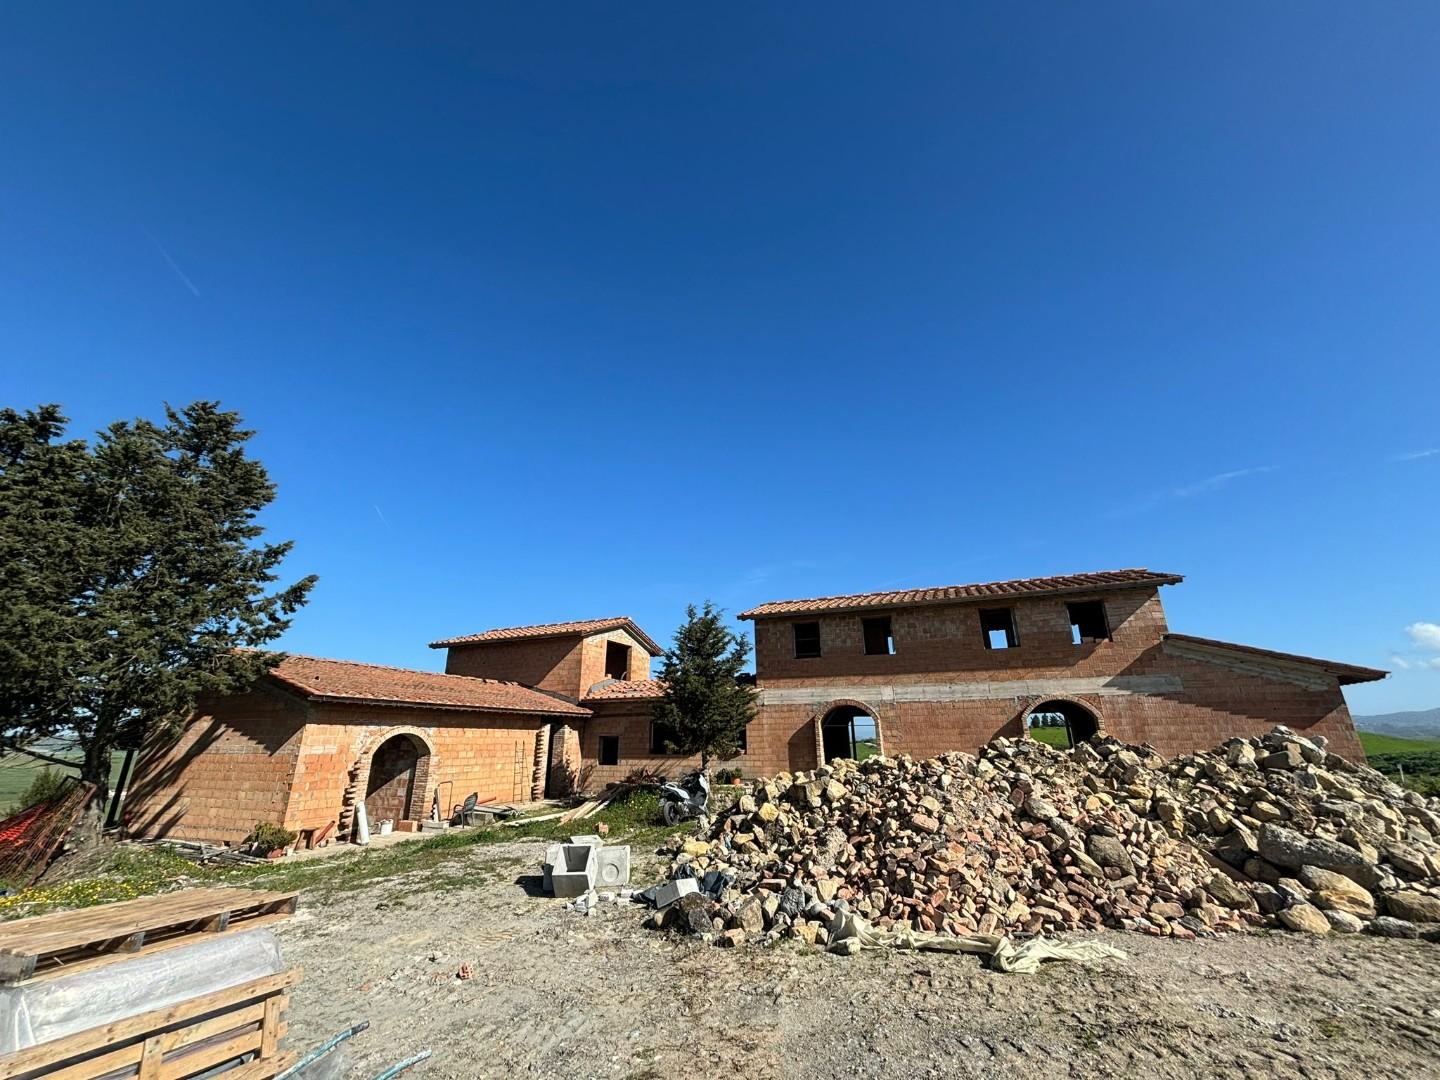 Villa Bifamiliare in vendita a Lajatico, 6 locali, prezzo € 210.000 | PortaleAgenzieImmobiliari.it